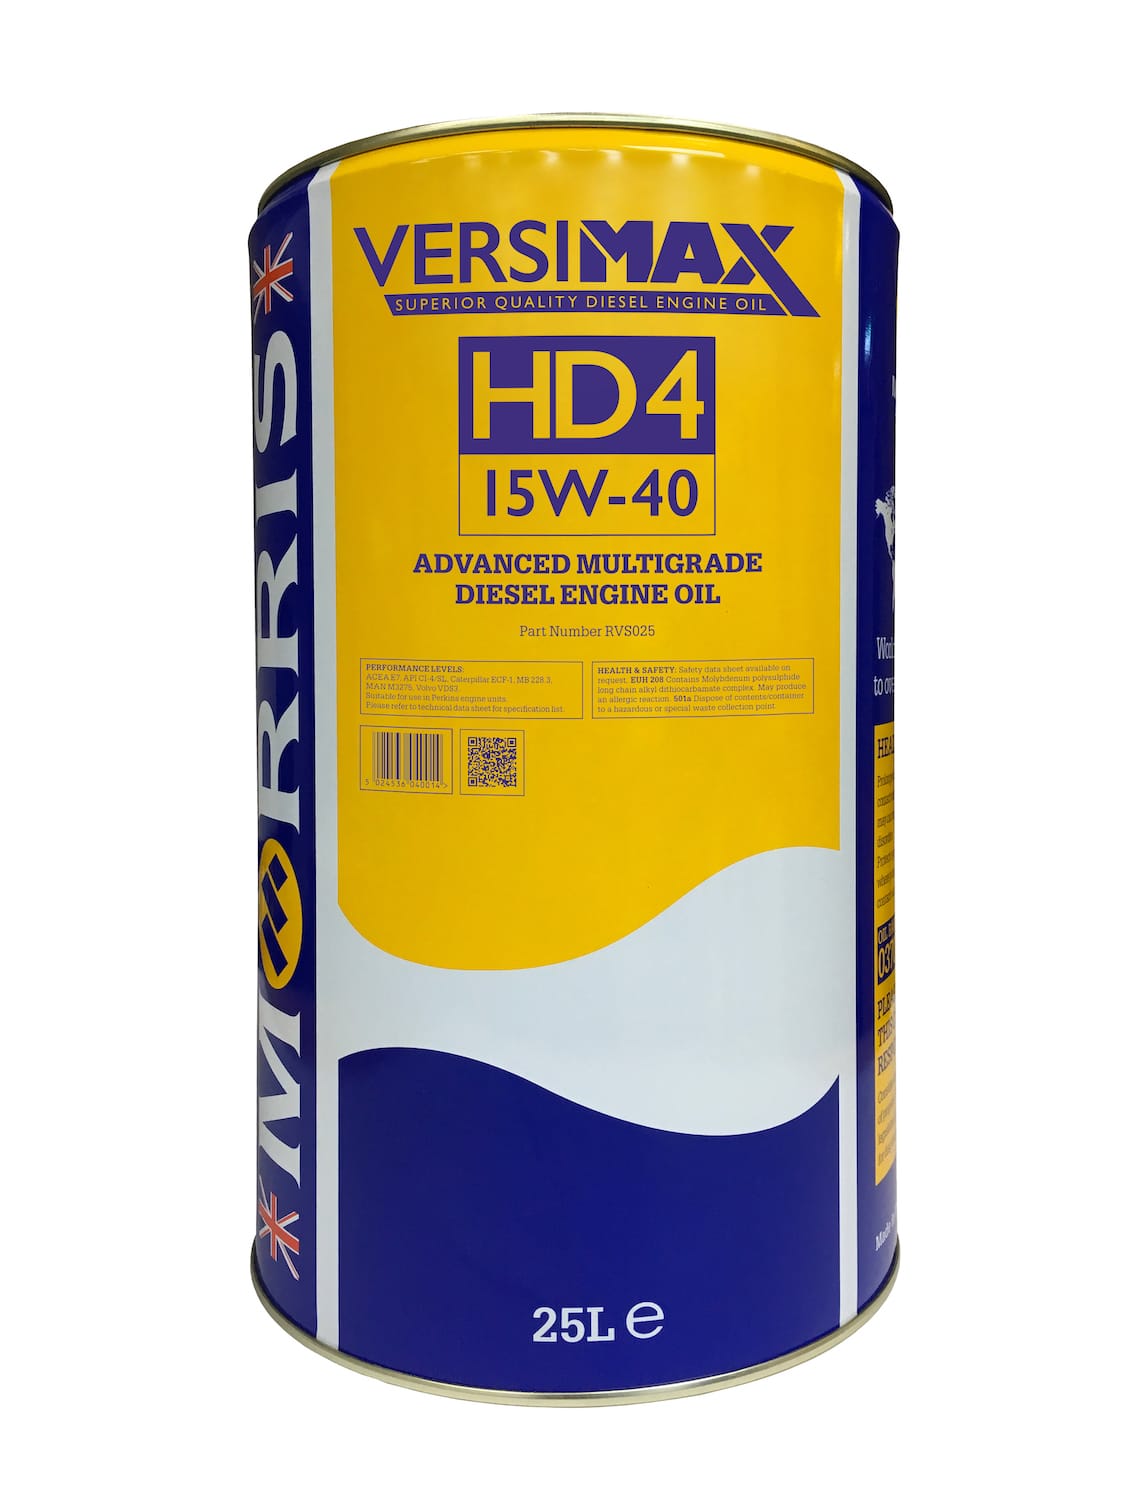 Versimax HD4 15W-40